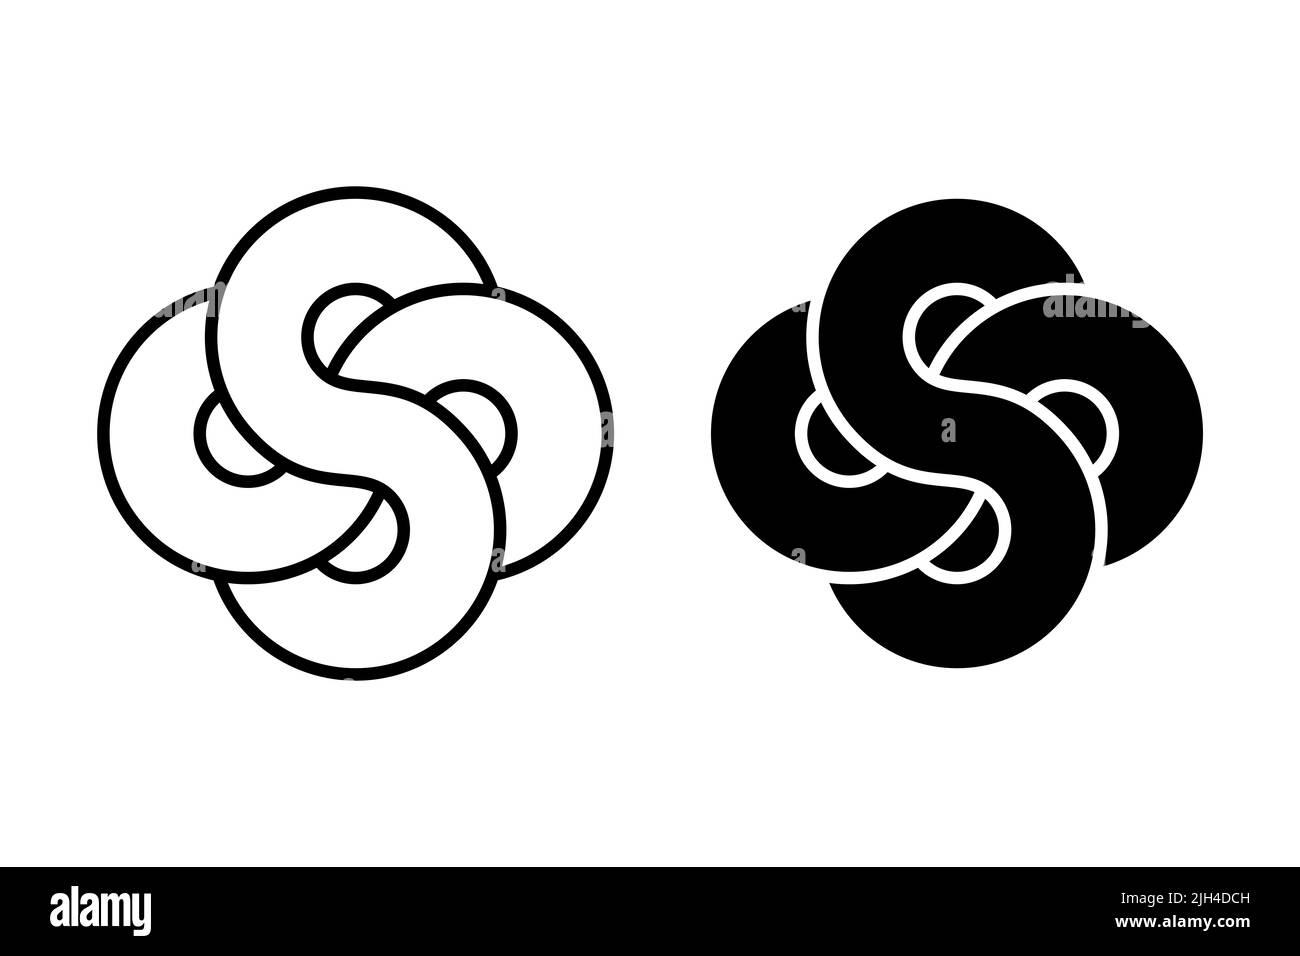 Verflochtenen Unendlichkeits-Symbole. Zwei acht ineinander greifende und überlappende Figuren bilden ein meditatives Symbol und Mandala. Heilige Geometrie. Schwarz und Weiß. Stockfoto